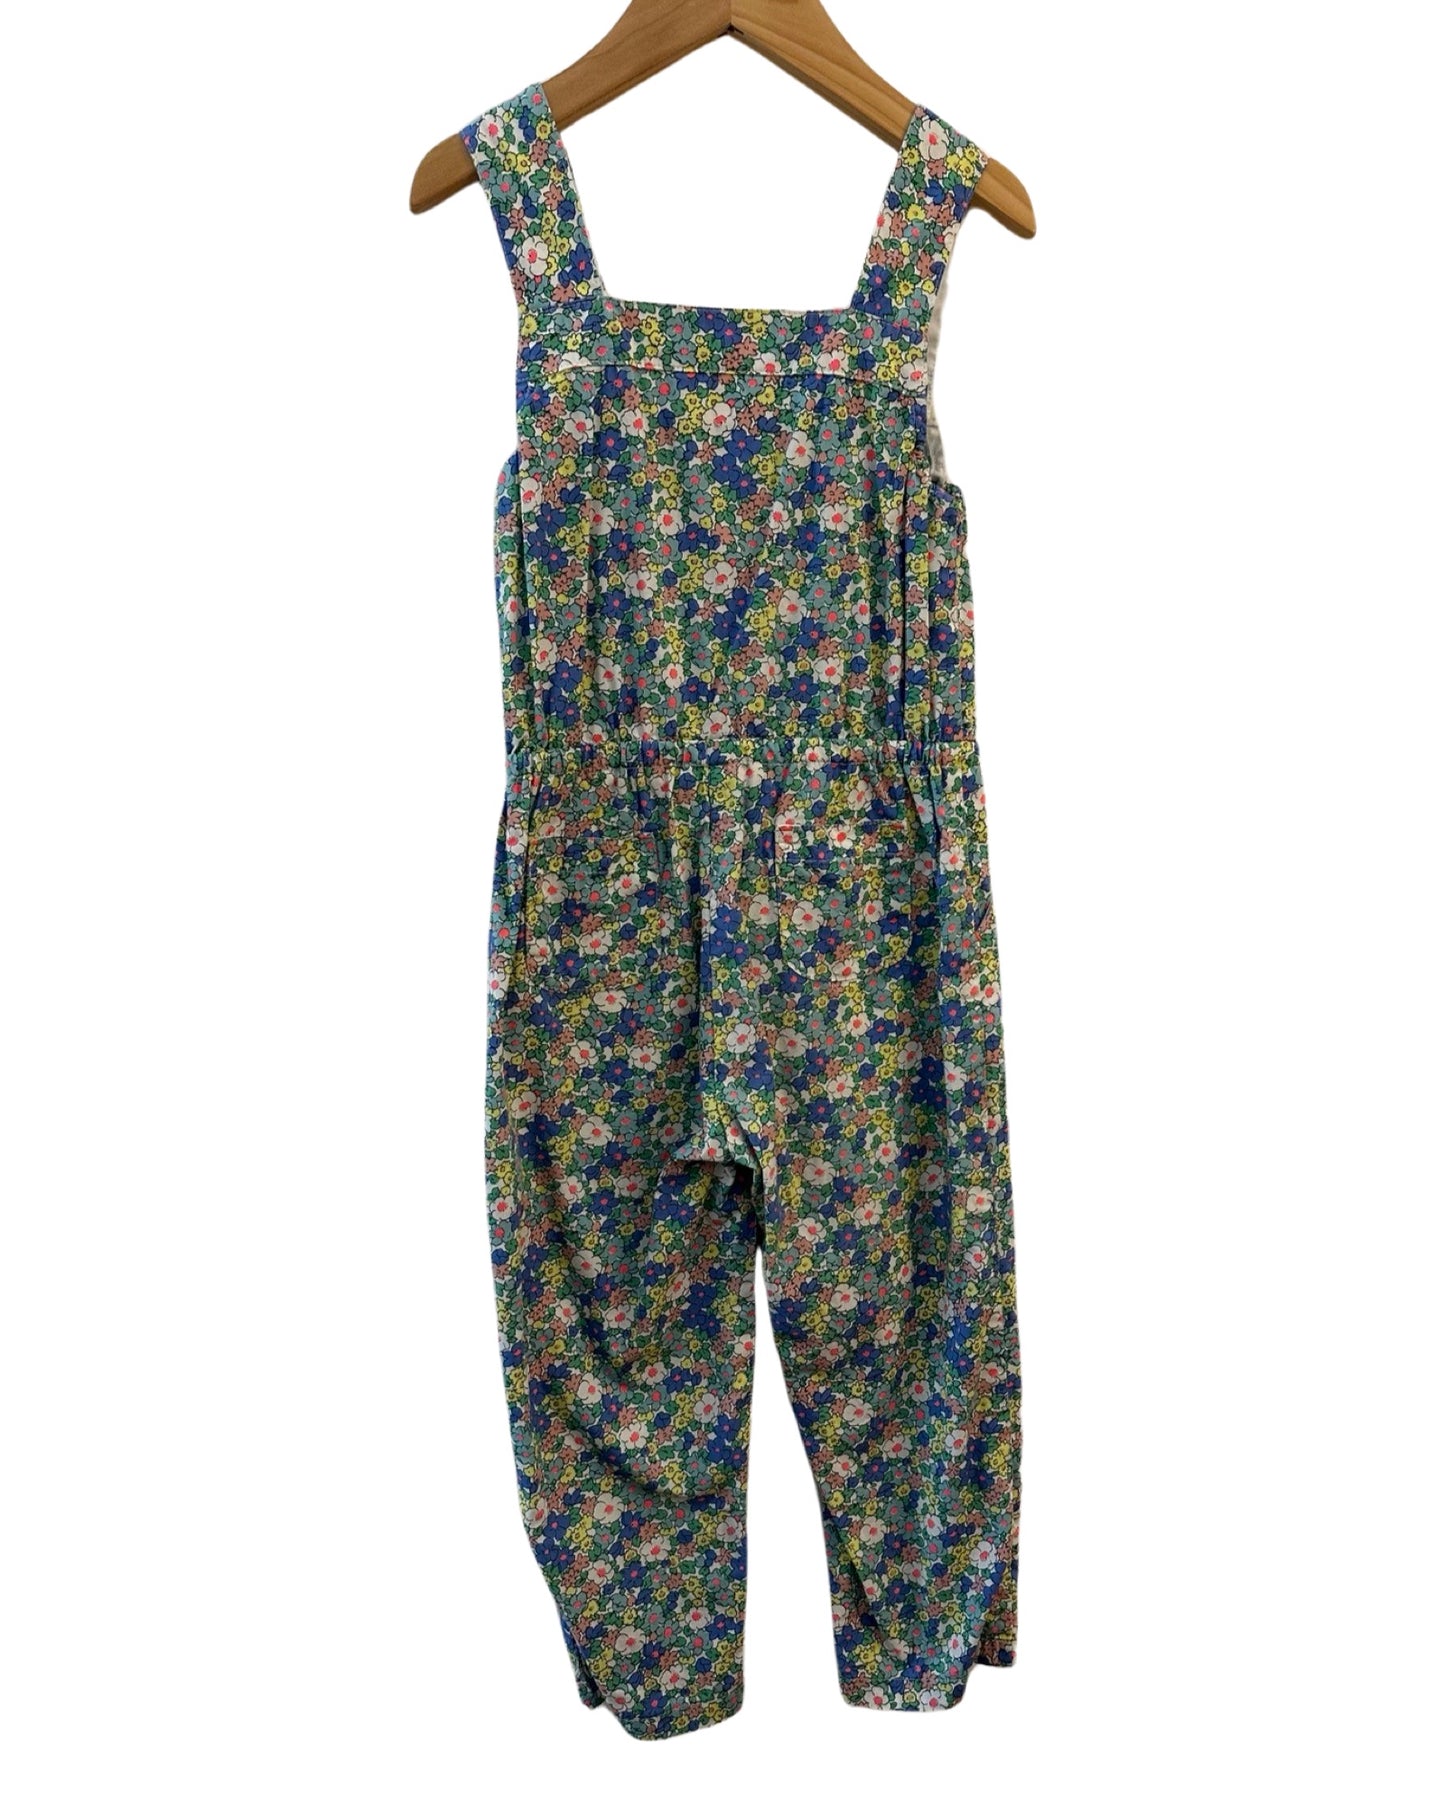 Mini Boden floral jumpsuit (2-3yrs)